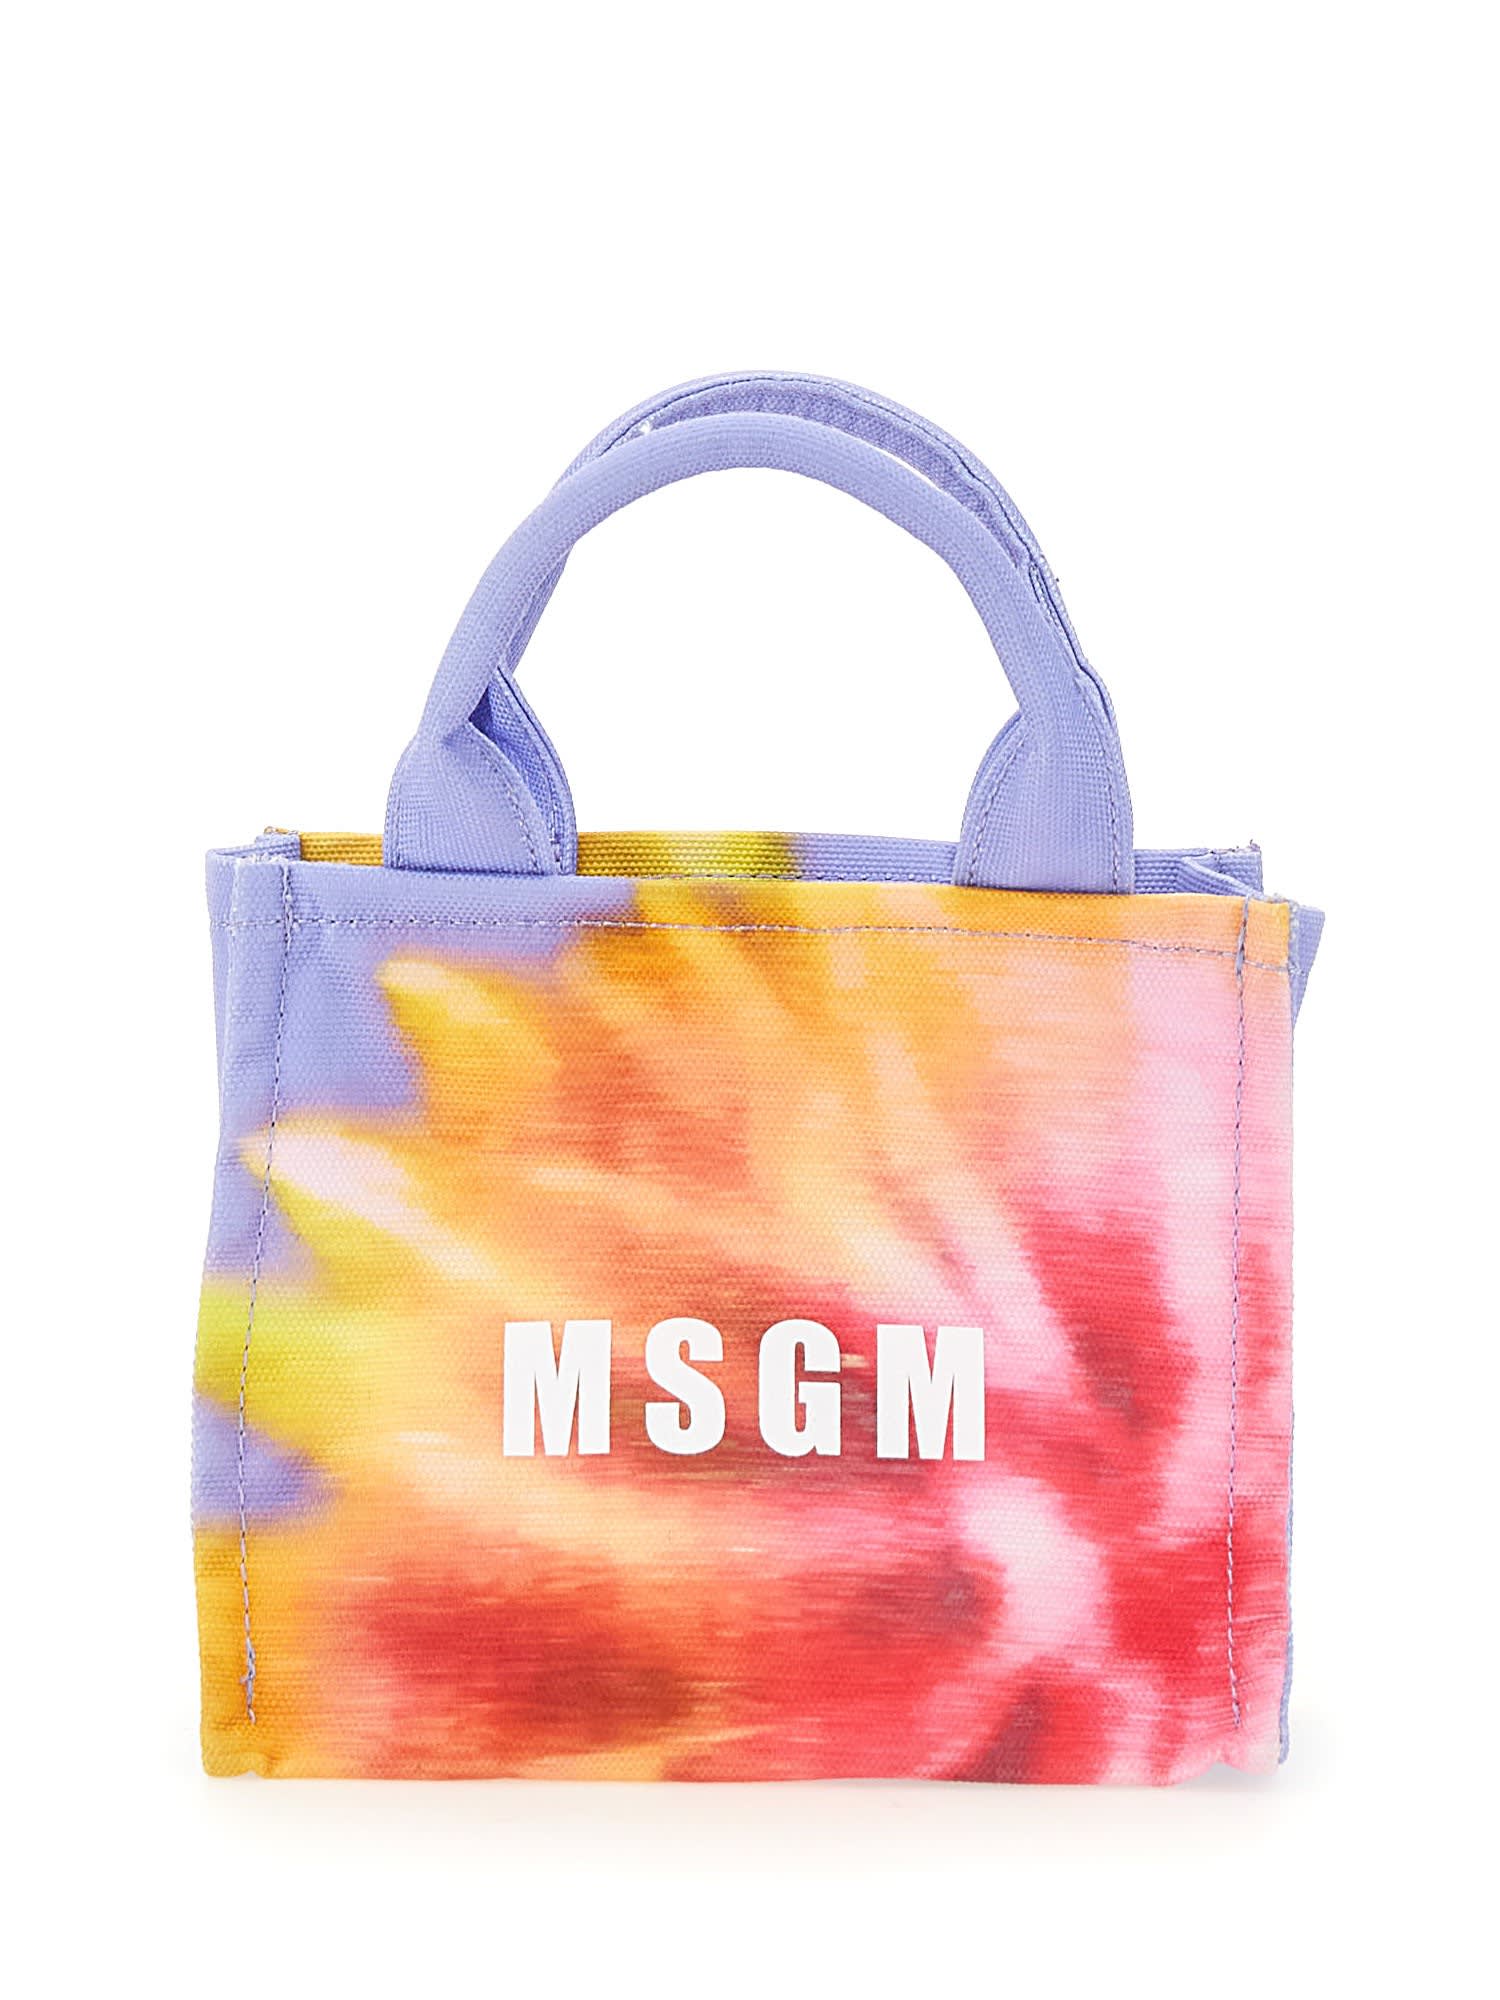 Msgm Canvas Tote Bag In Multicolor